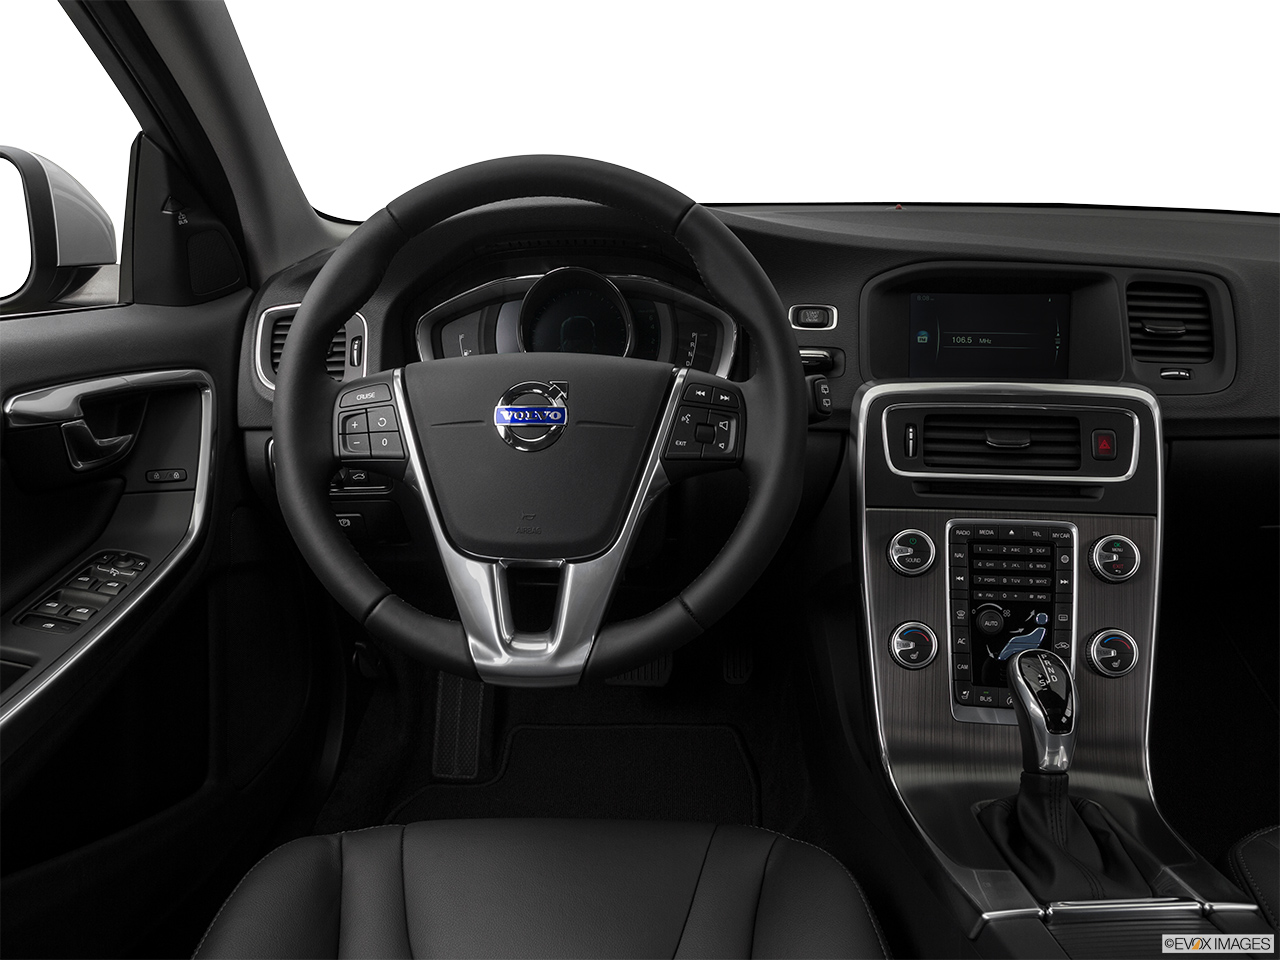 2016 Volvo V60 T5 Drive-E FWD Premier Steering wheel/Center Console. 